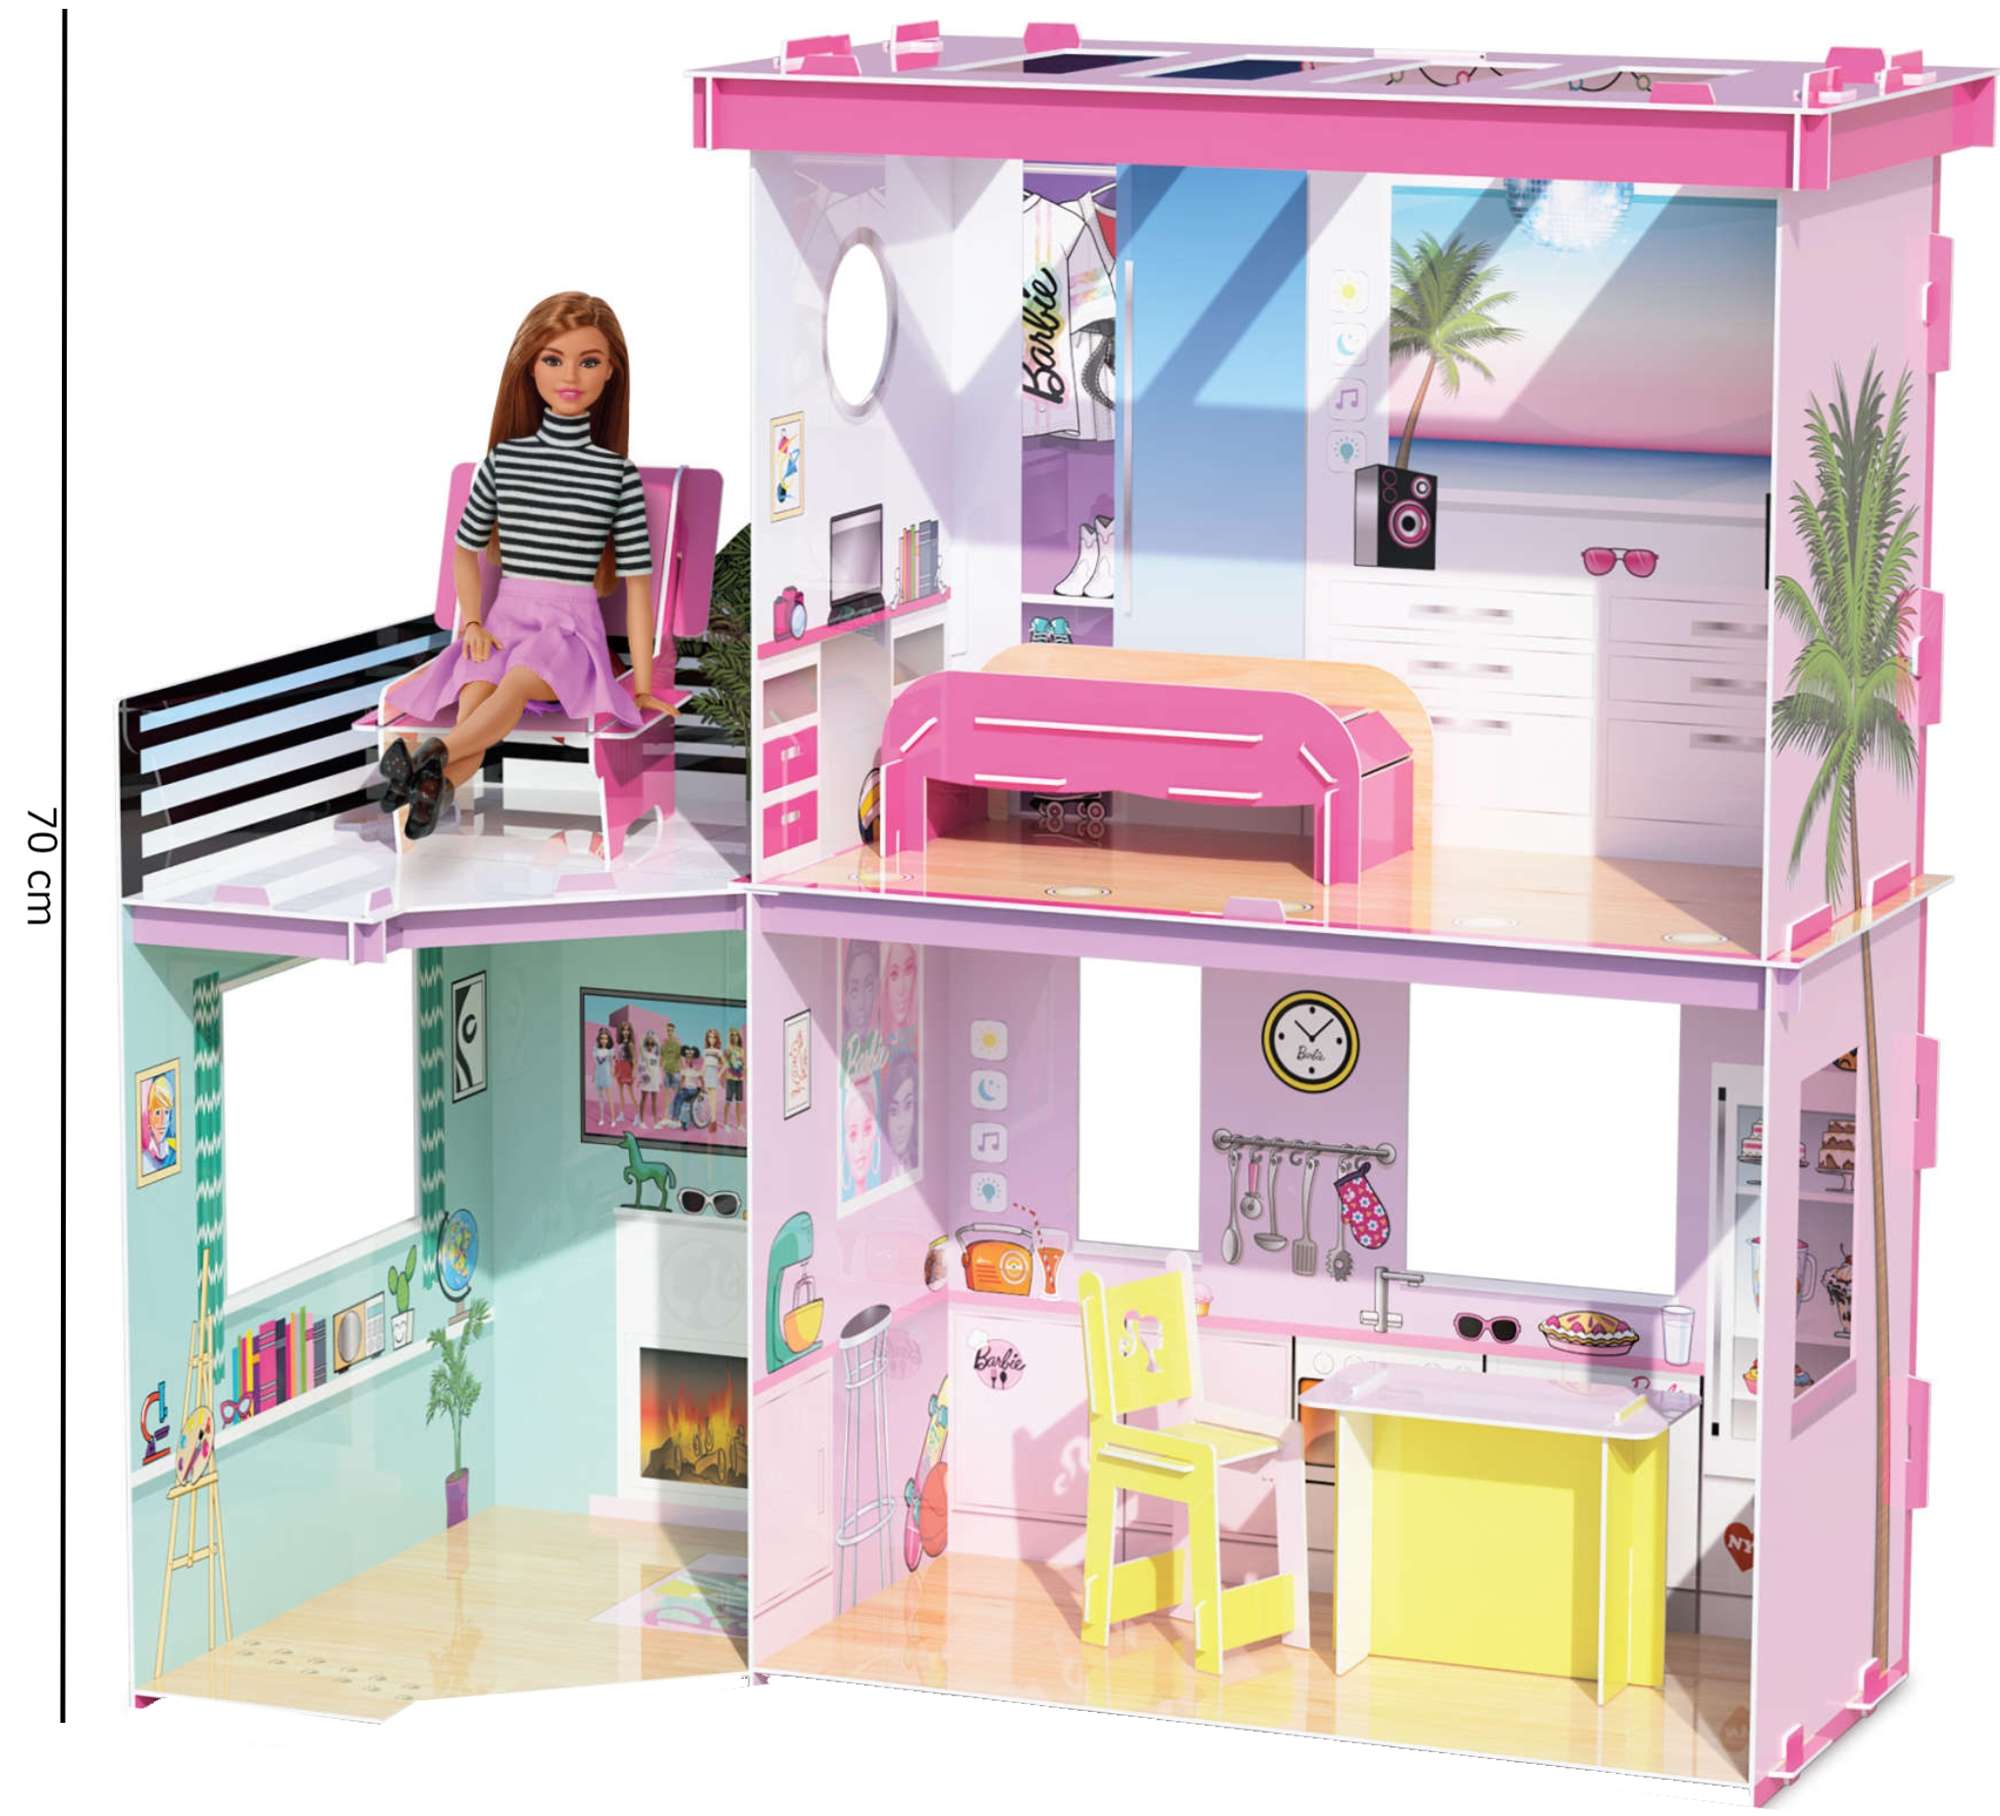 Barbie domek dla lalek do samodzielnego zoenia 70 cm - zestaw kreatywny Maker Kitz